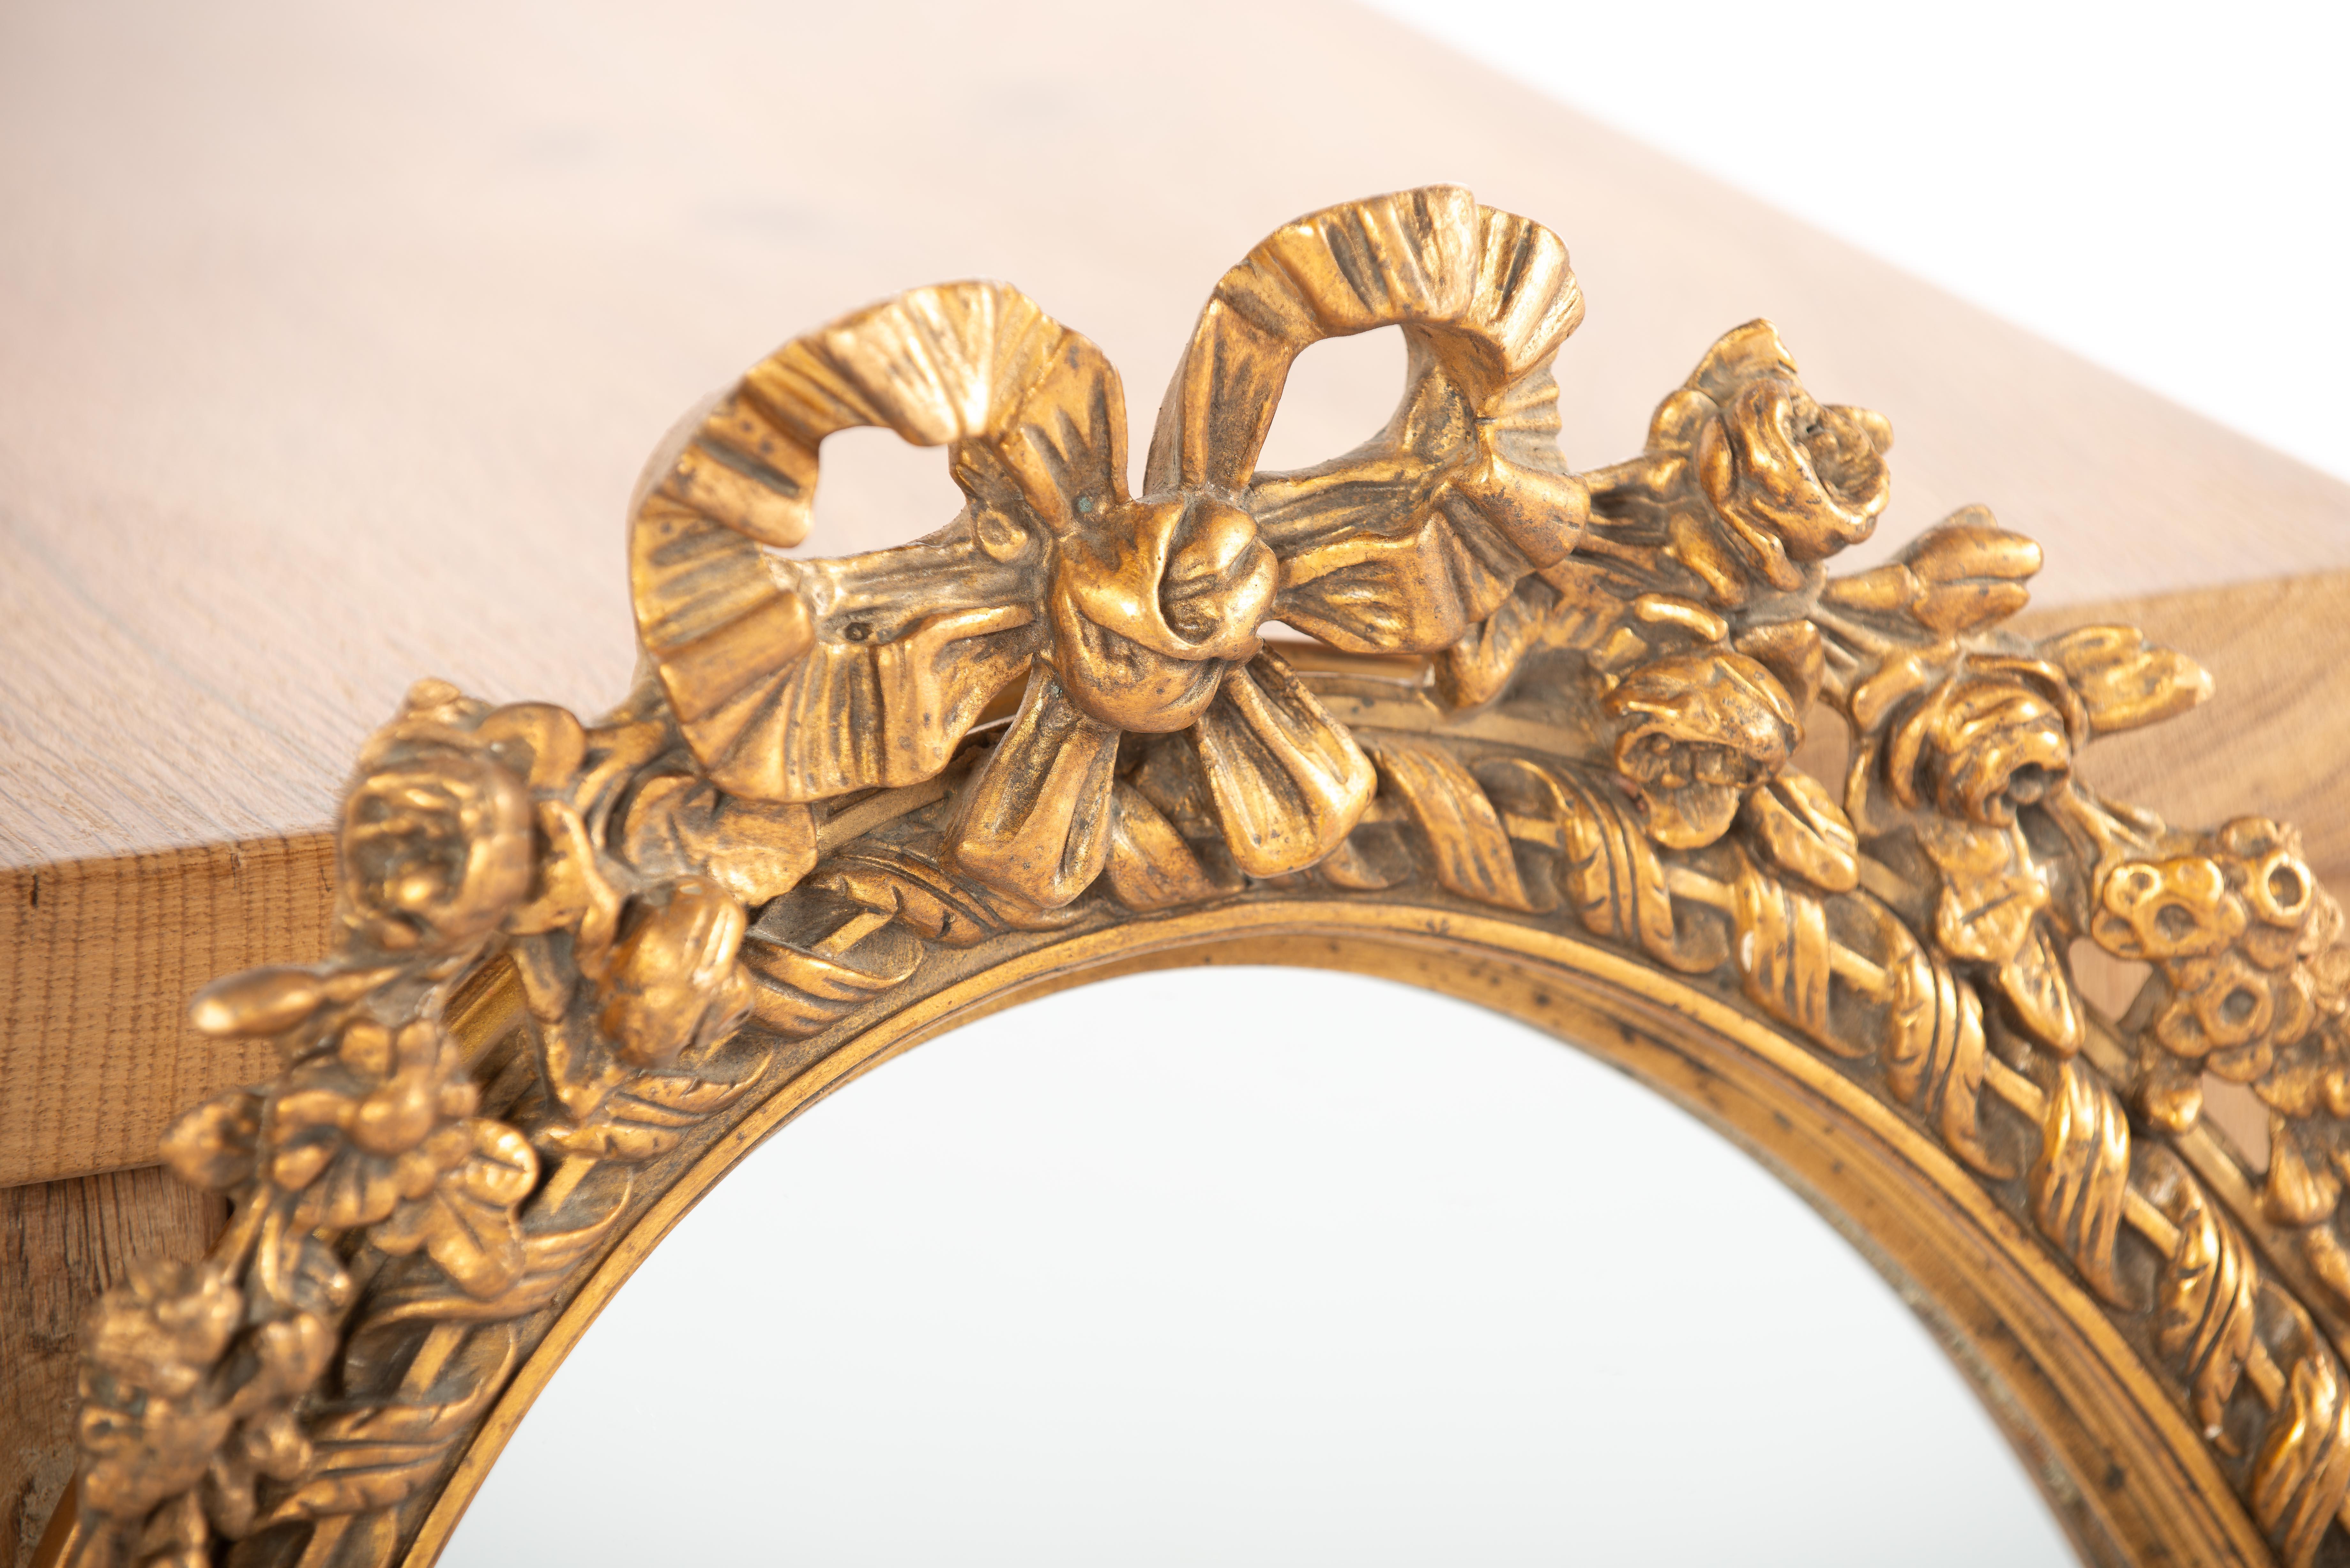 Dies ist ein schöner kleiner ovaler Spiegel, der in Frankreich zu Beginn des 20. Jahrhunderts, um 1910, hergestellt wurde. Der Spiegel hat einen Rahmen aus Lindenholz und ist mit Stuckleisten und Ornamenten verziert. Das obere Ornament besteht aus